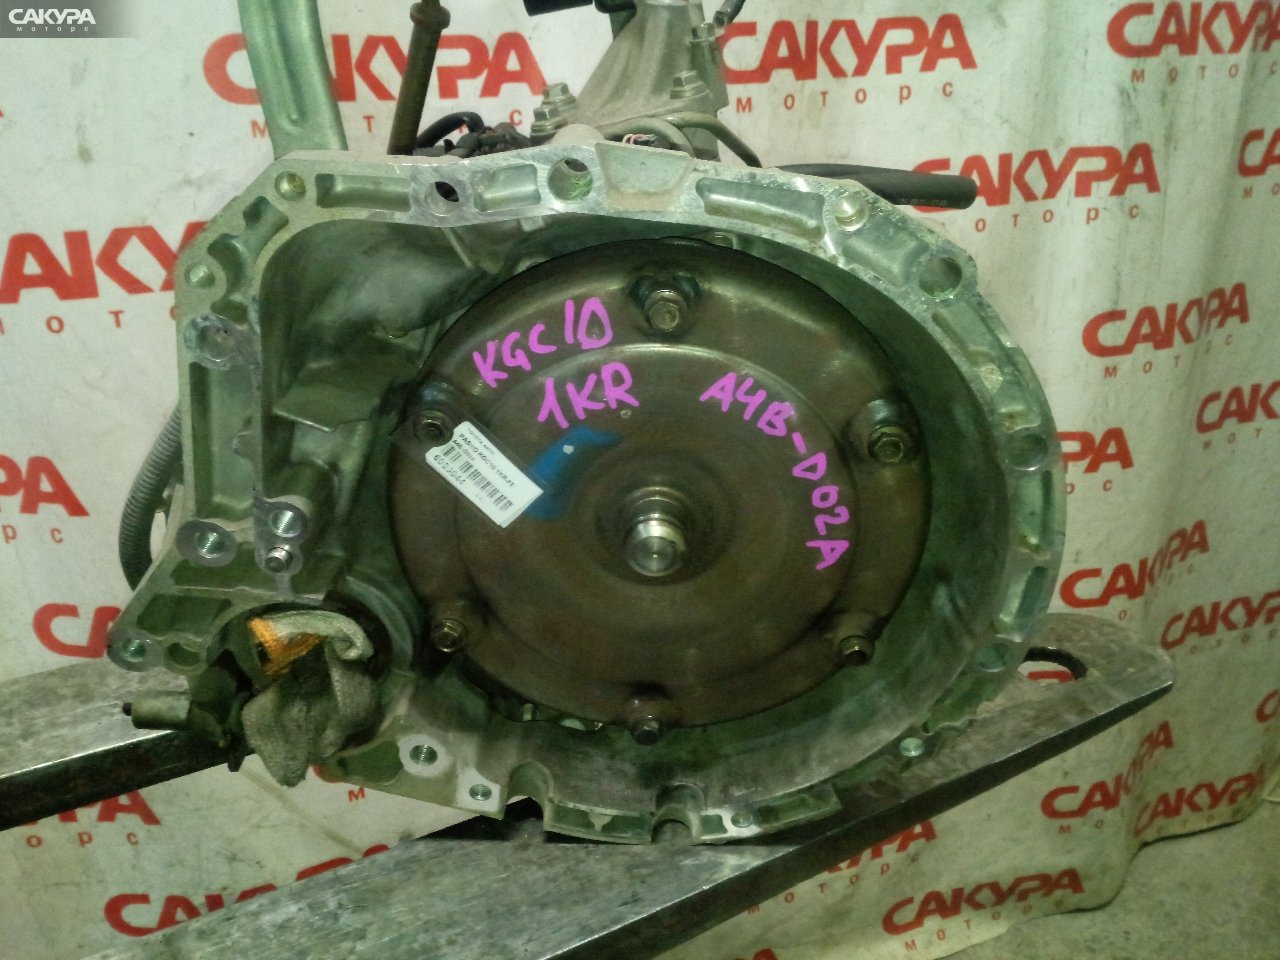 АКПП Toyota Passo KGC10 1KR-FE: купить в Сакура Кемерово.